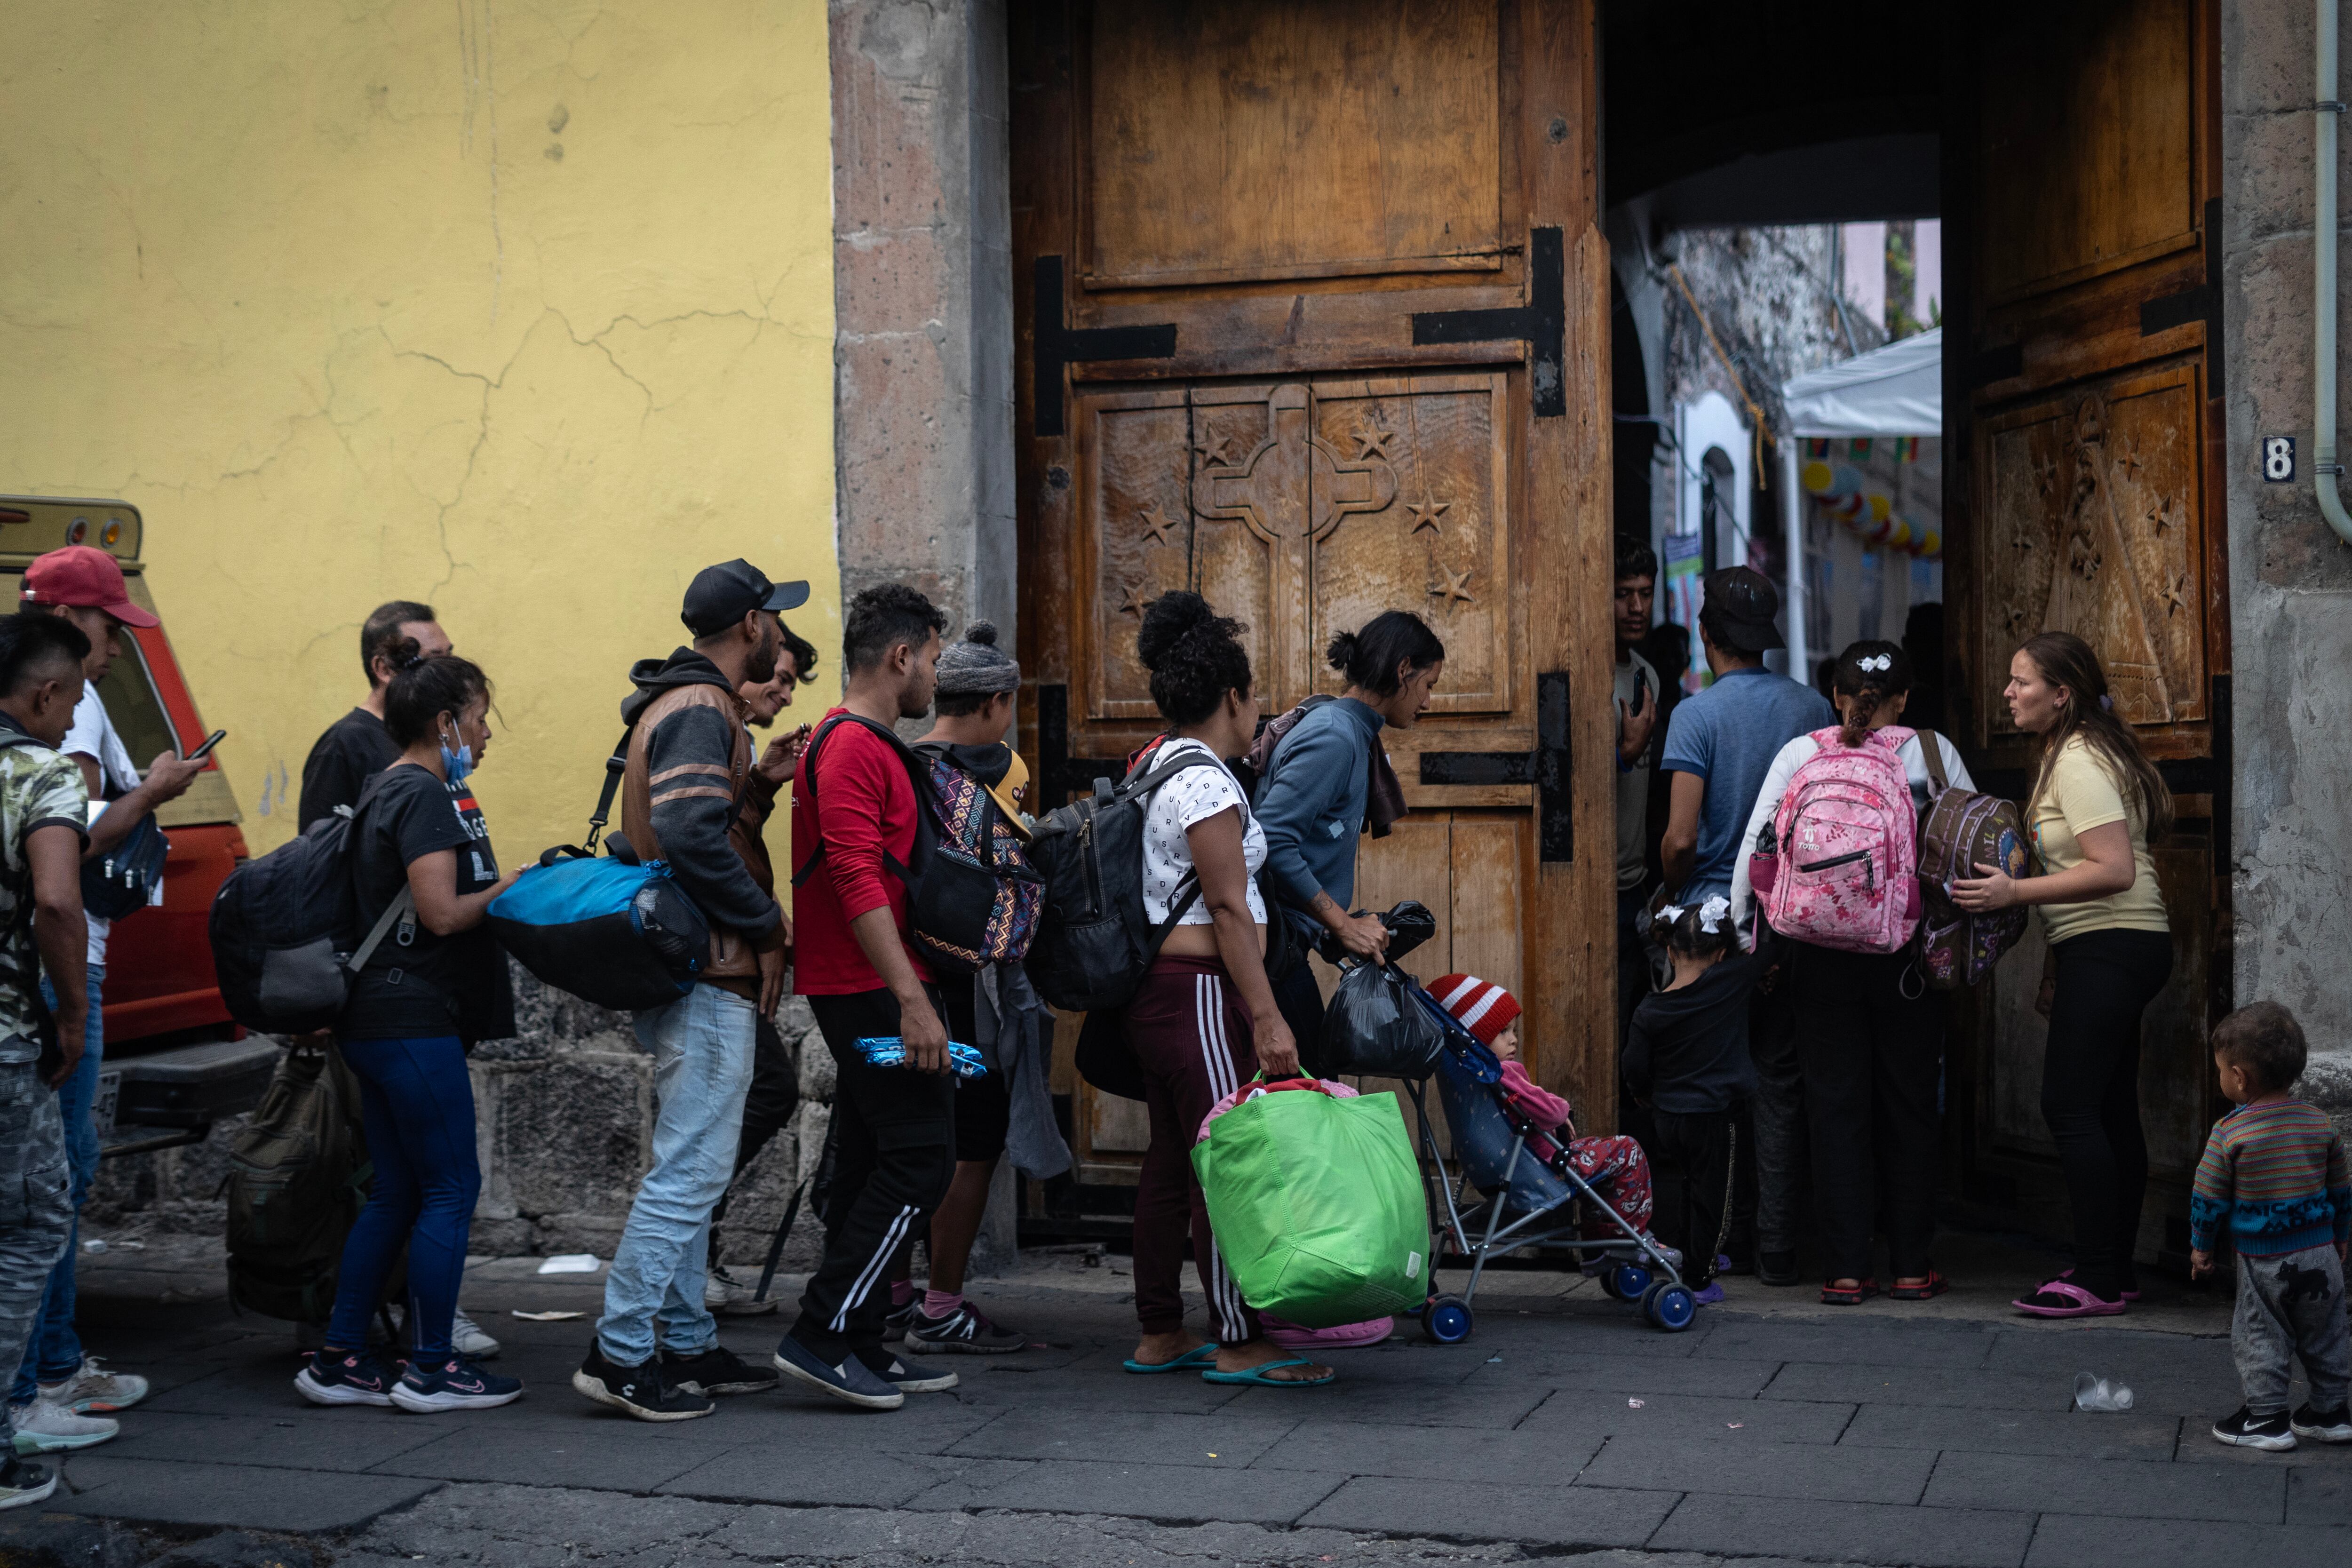 Grupos de migrantes ingresan a la parroquia de la Soledad por una de las puertas laterales, el pasado 27 de octubre.